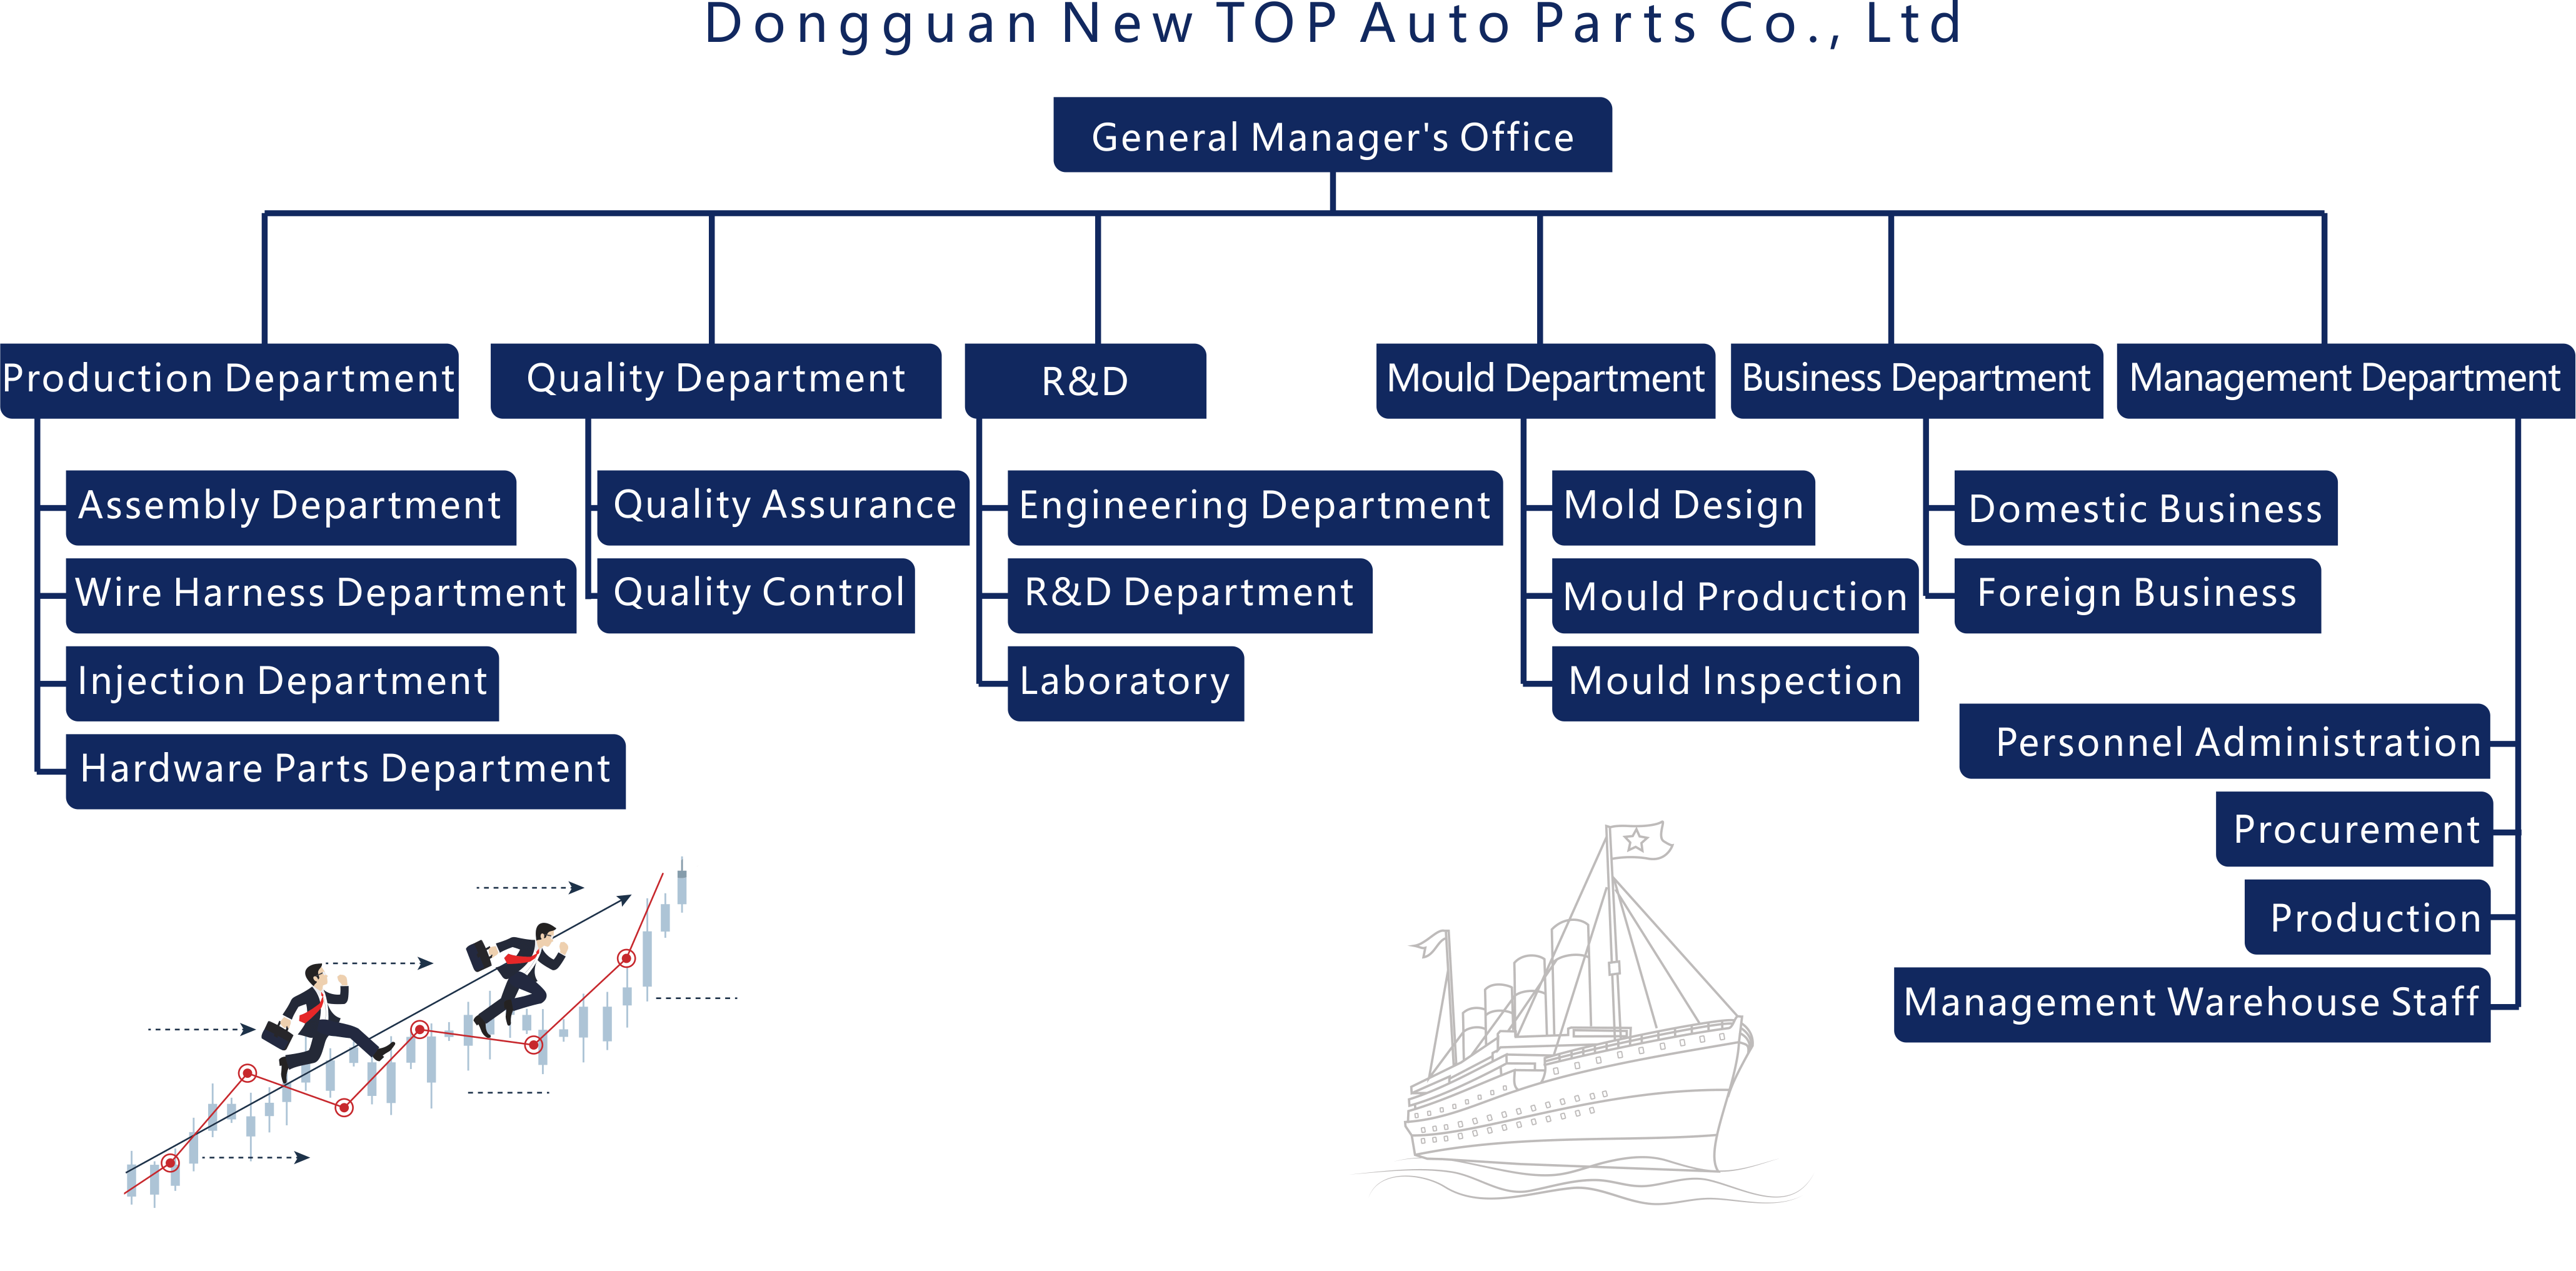 Organization Structure-2